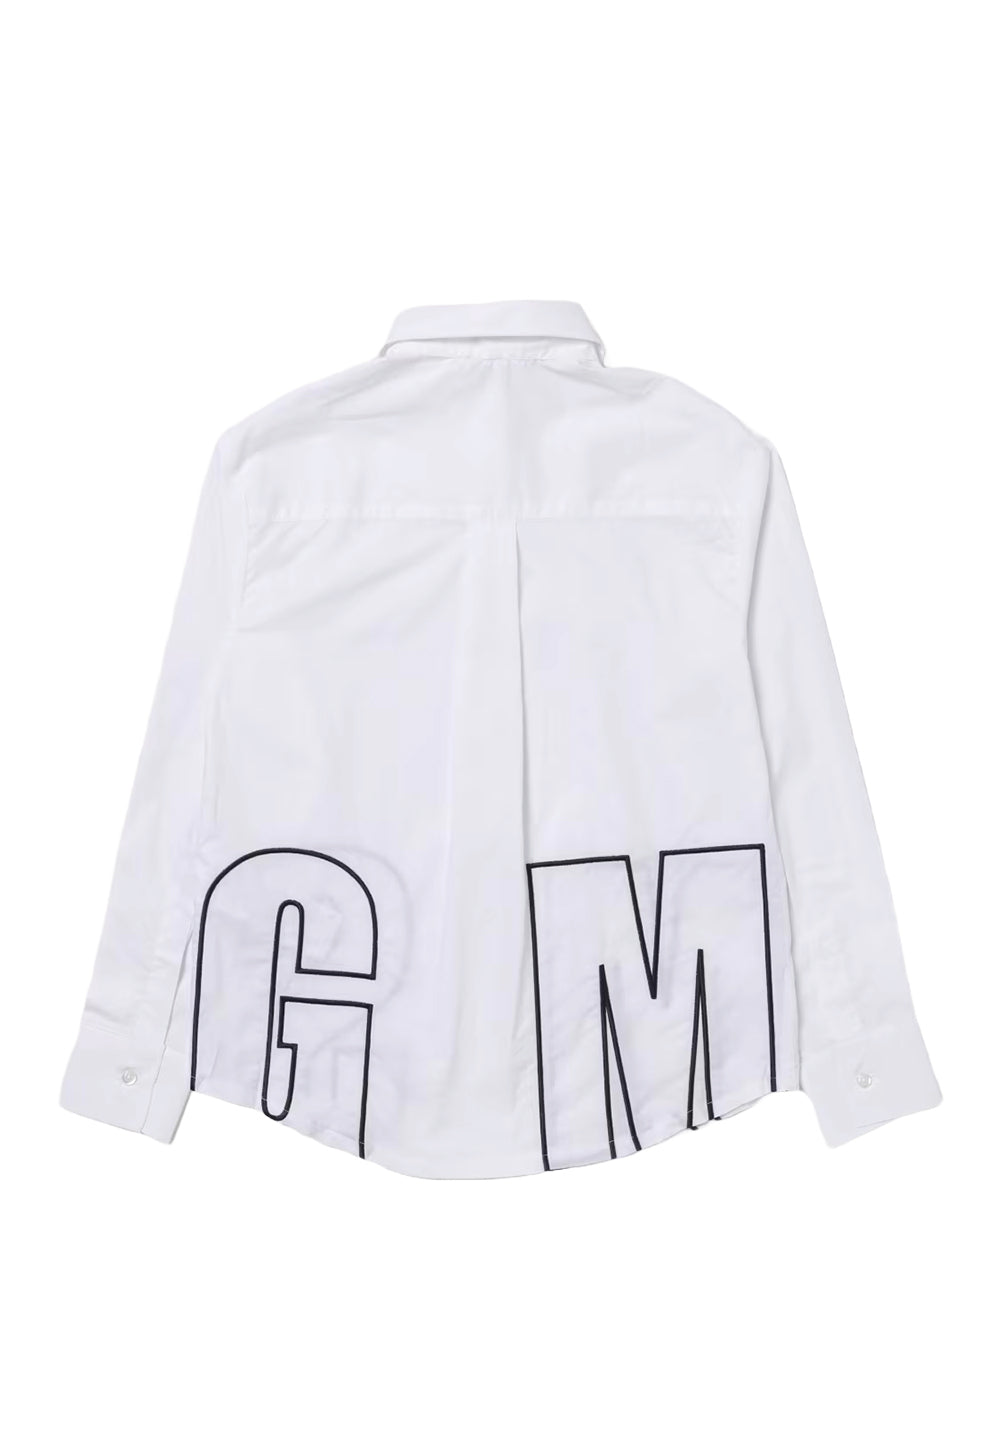 White shirt for girls